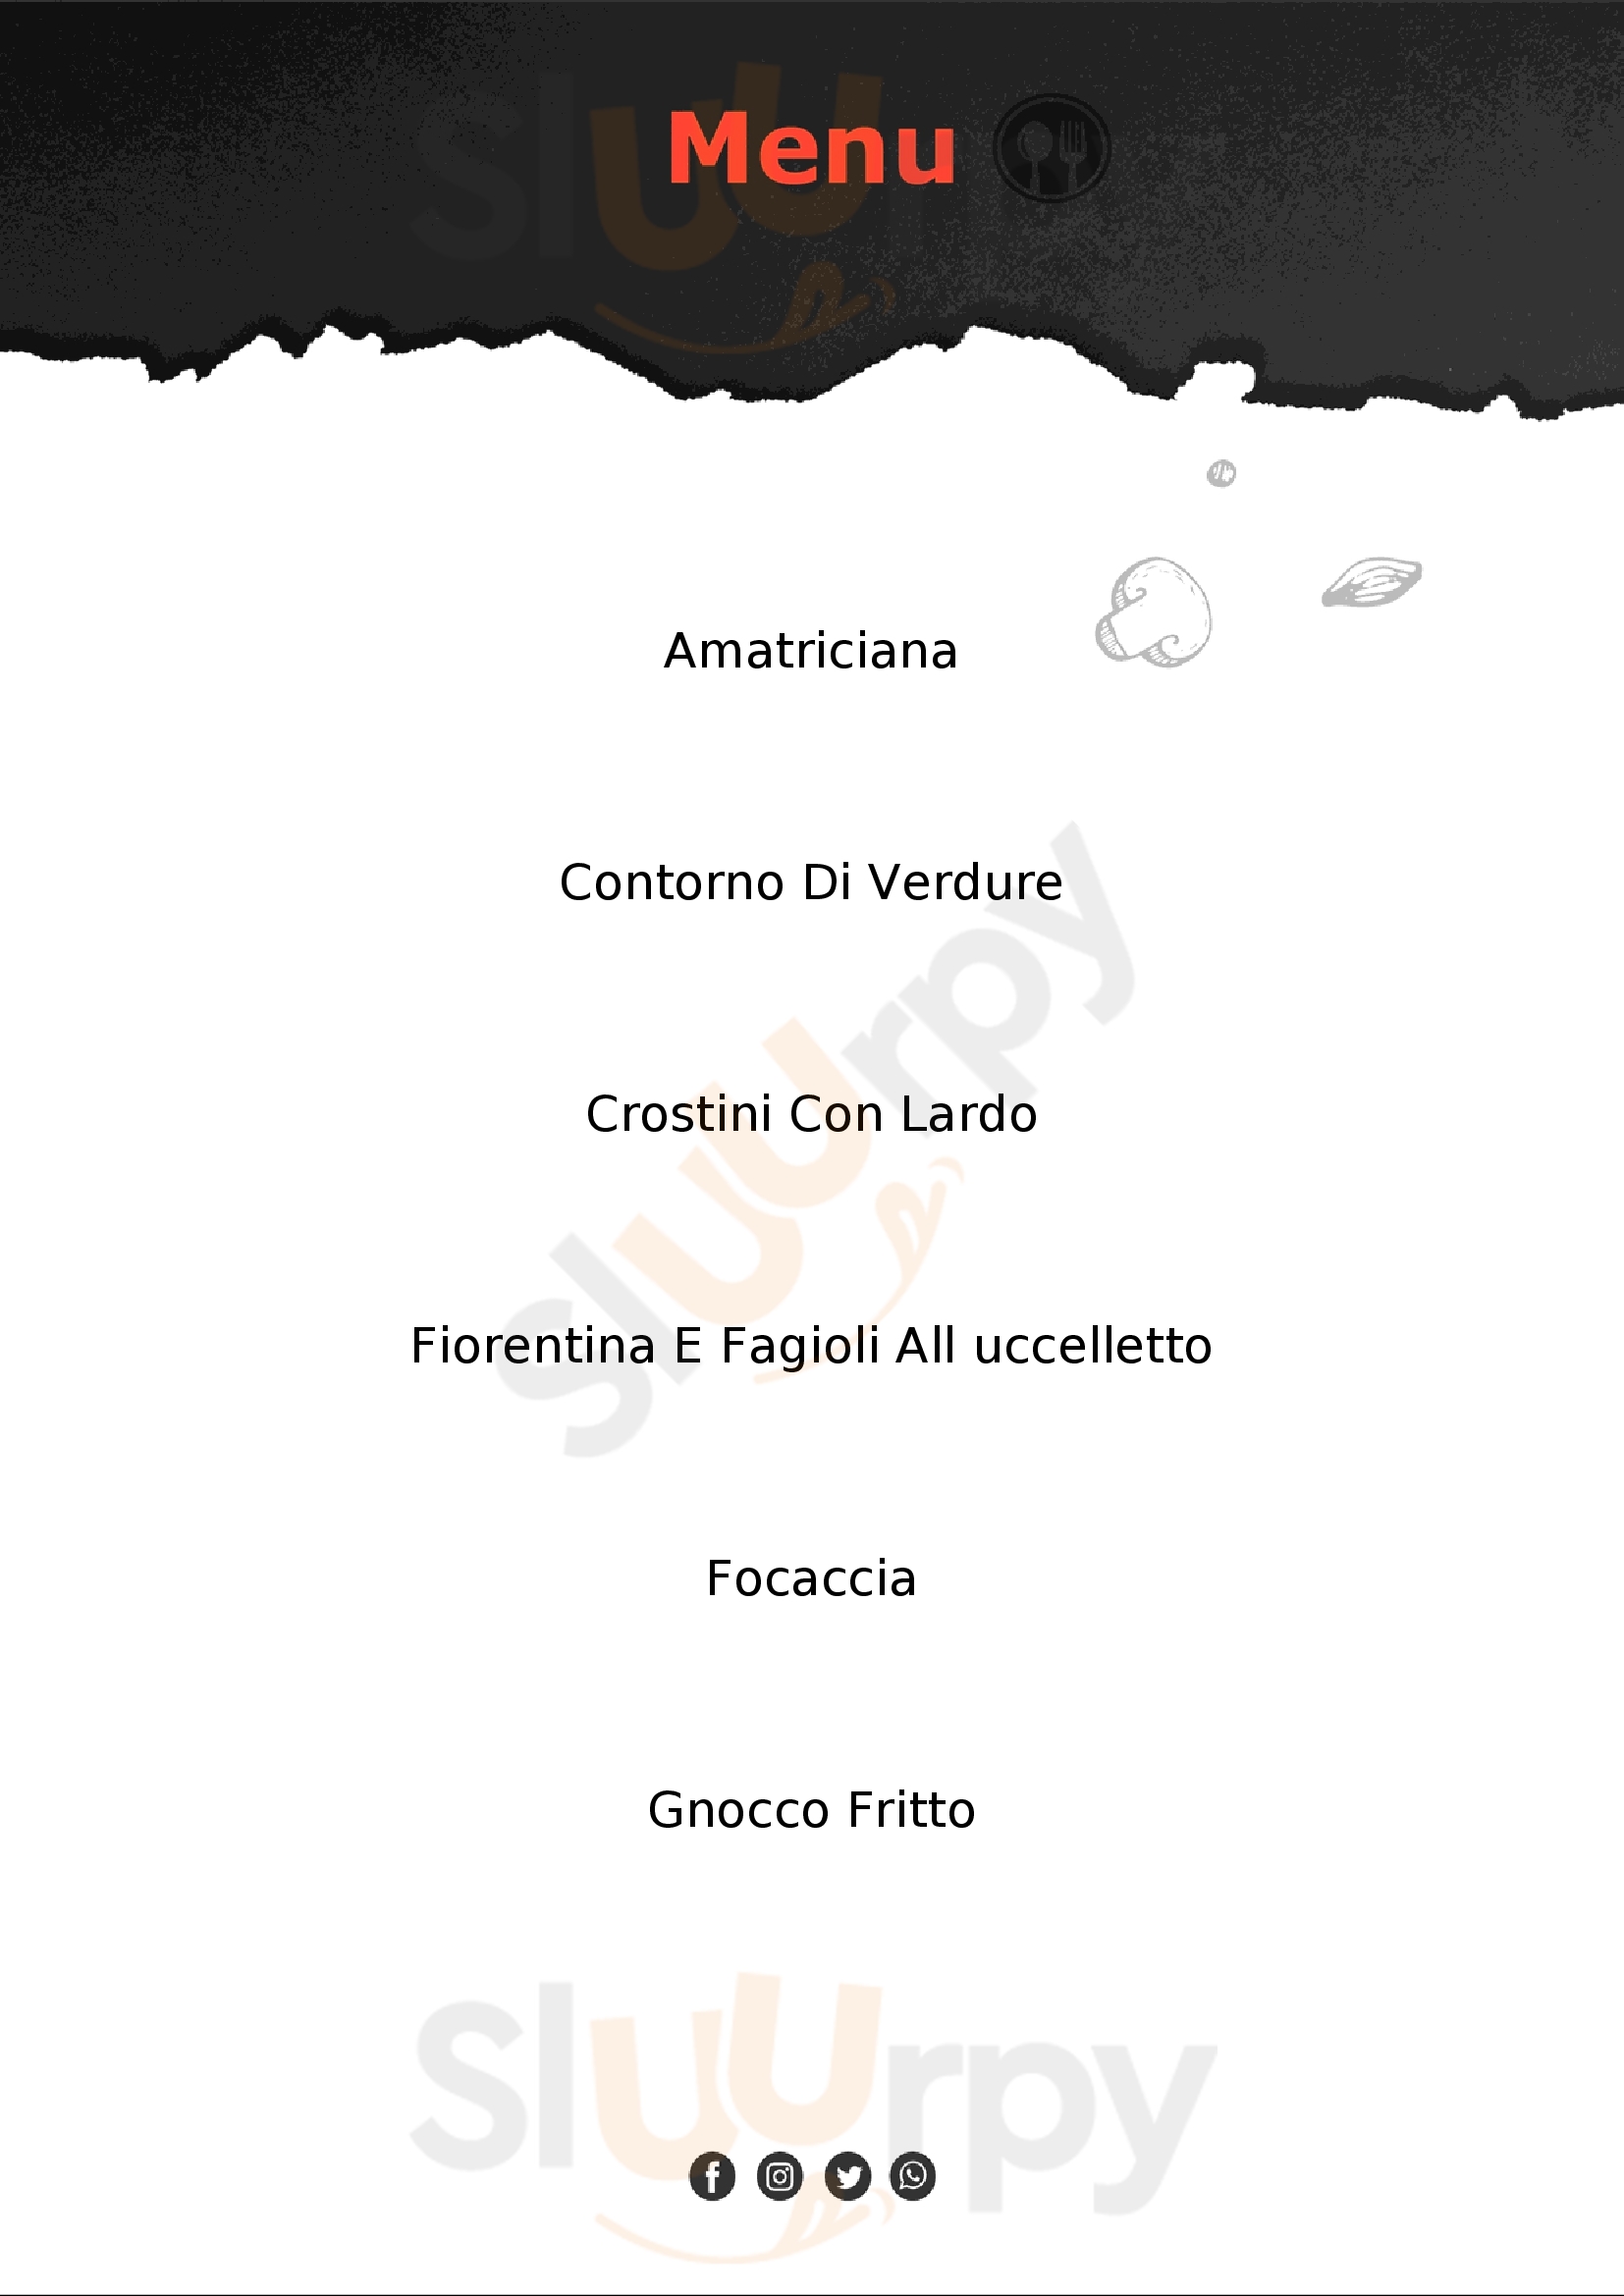 Trattoria Toscana ‘Il Cencio’ Legnano menù 1 pagina